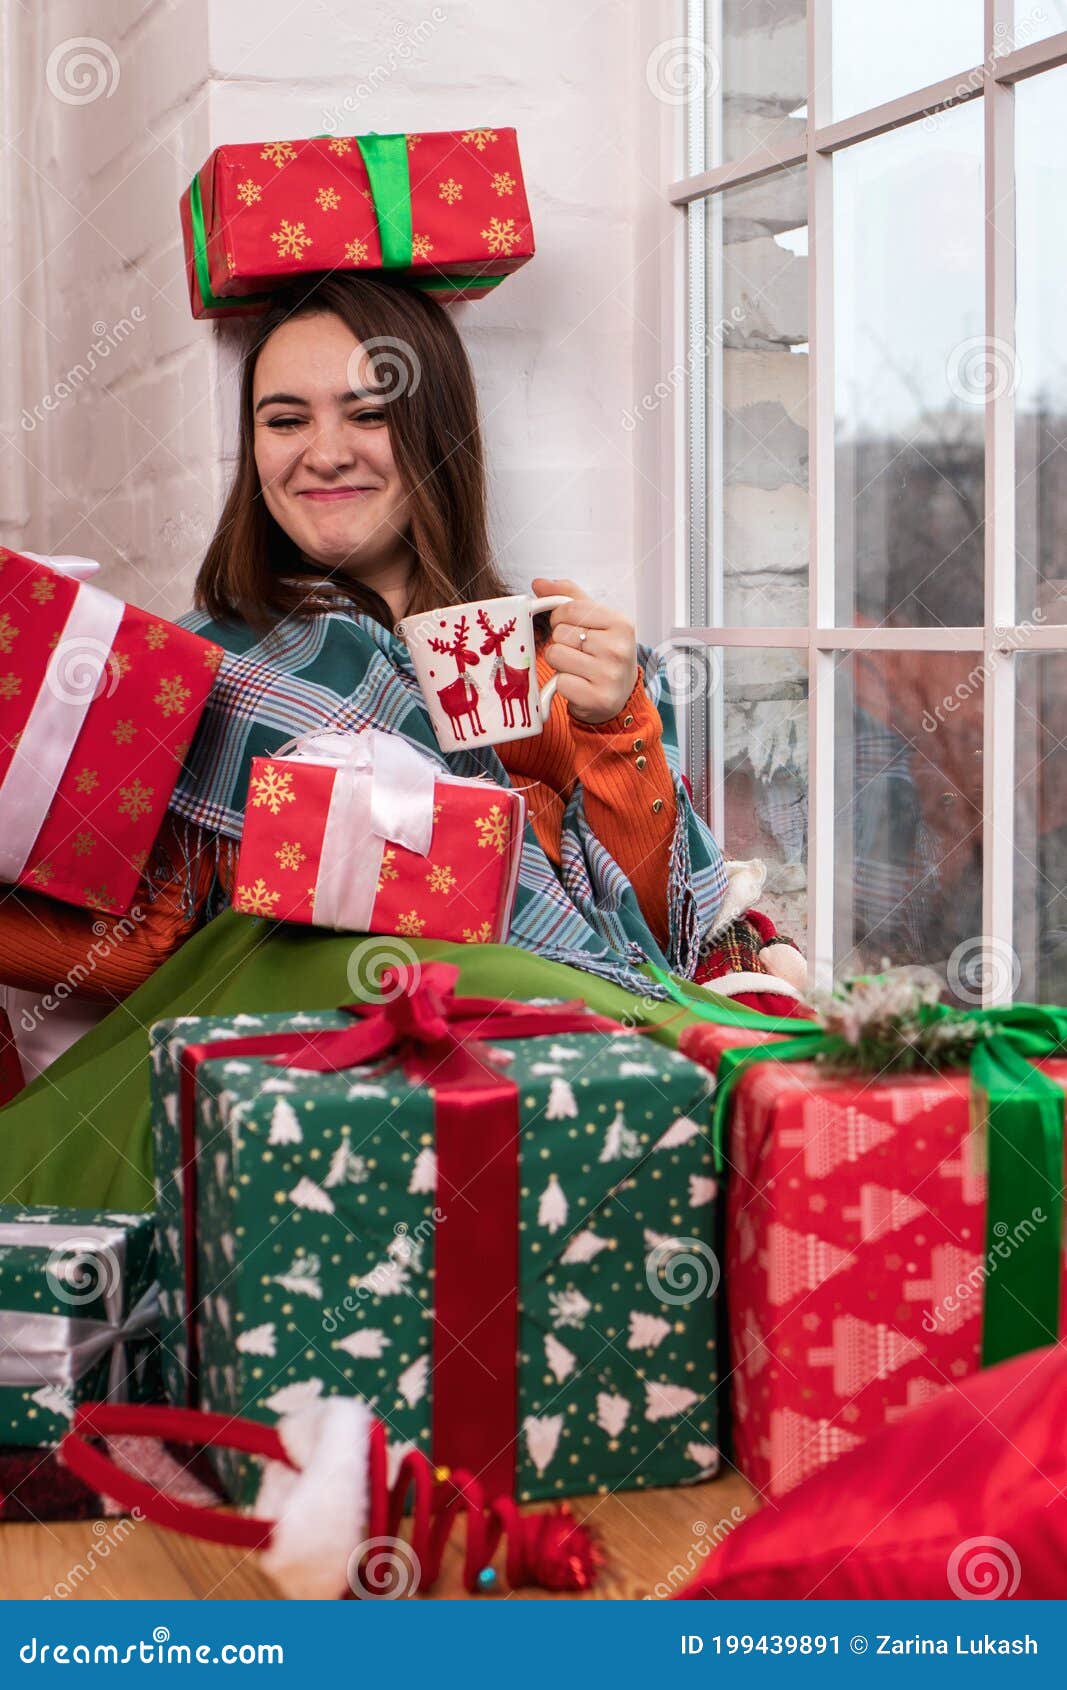 15 regalos para mujeres para sorprender esta Navidad 2018-2019